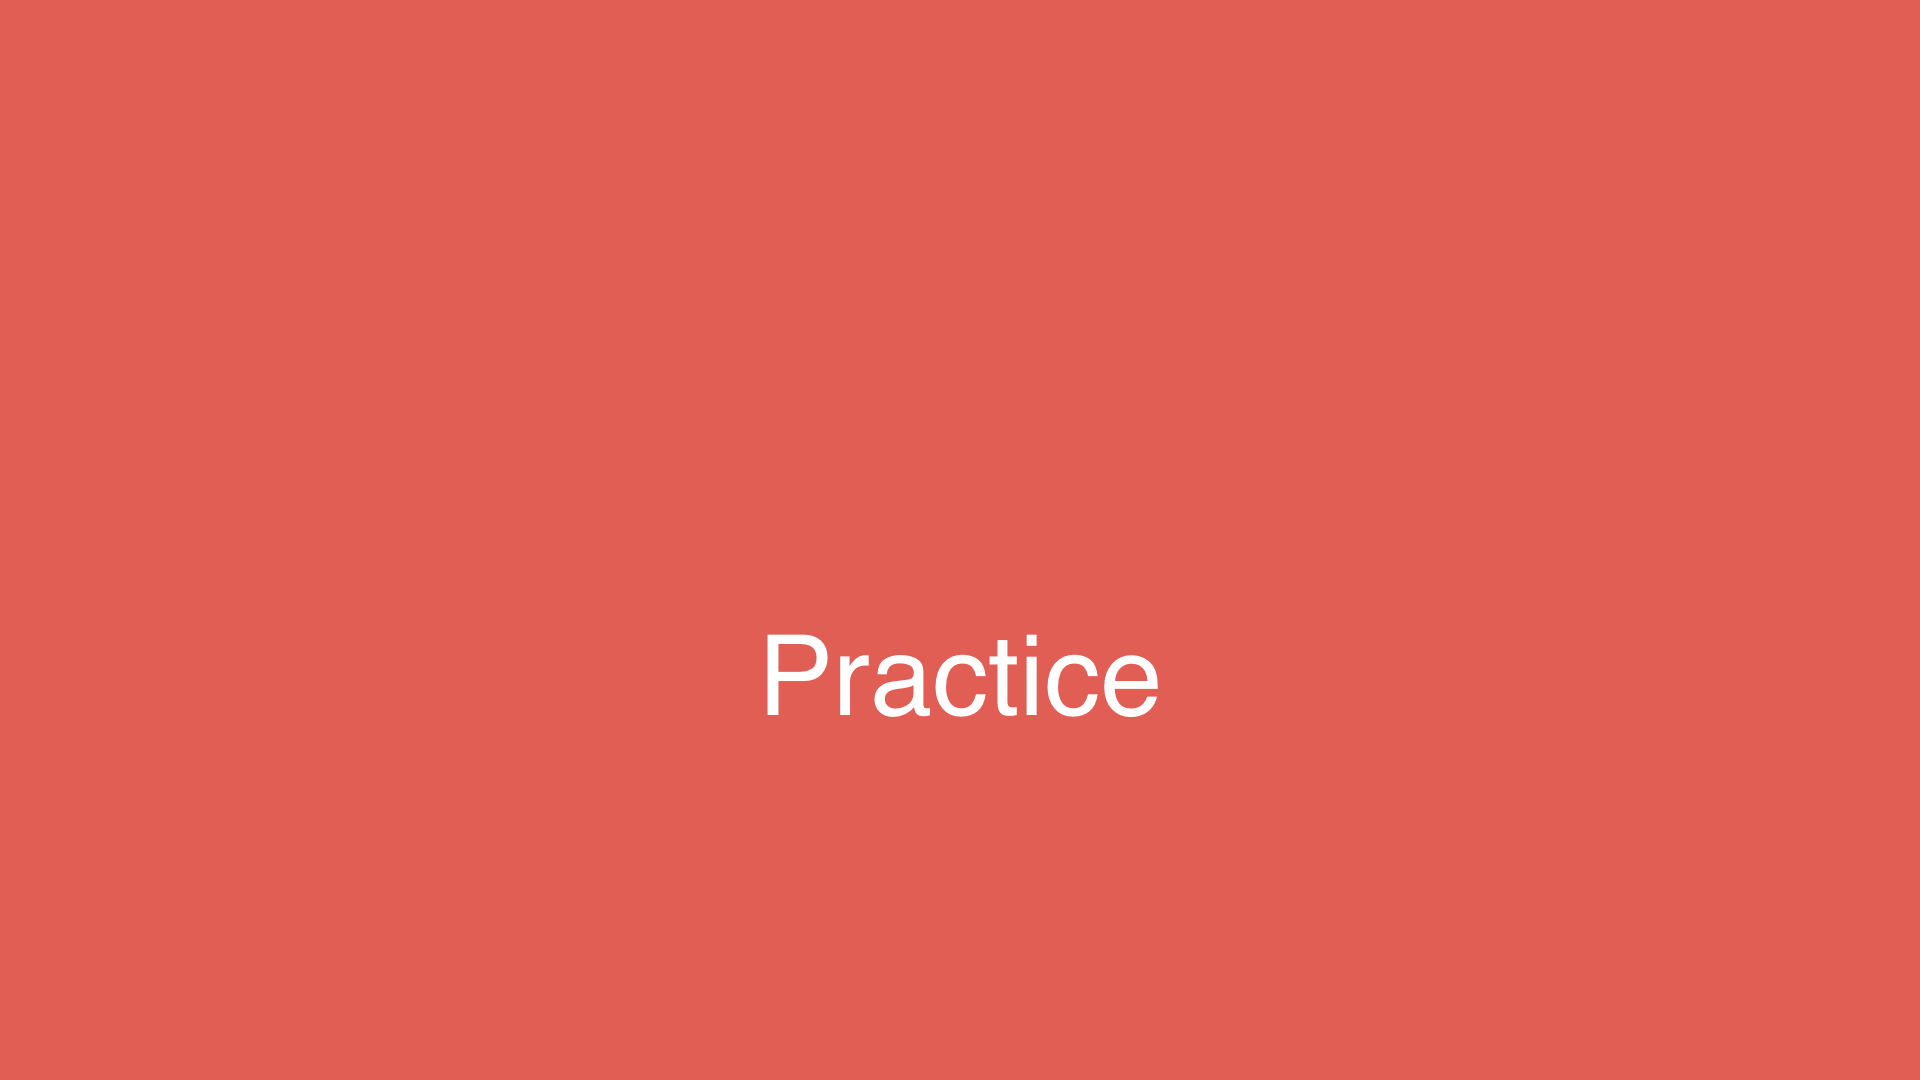 Text: Practice